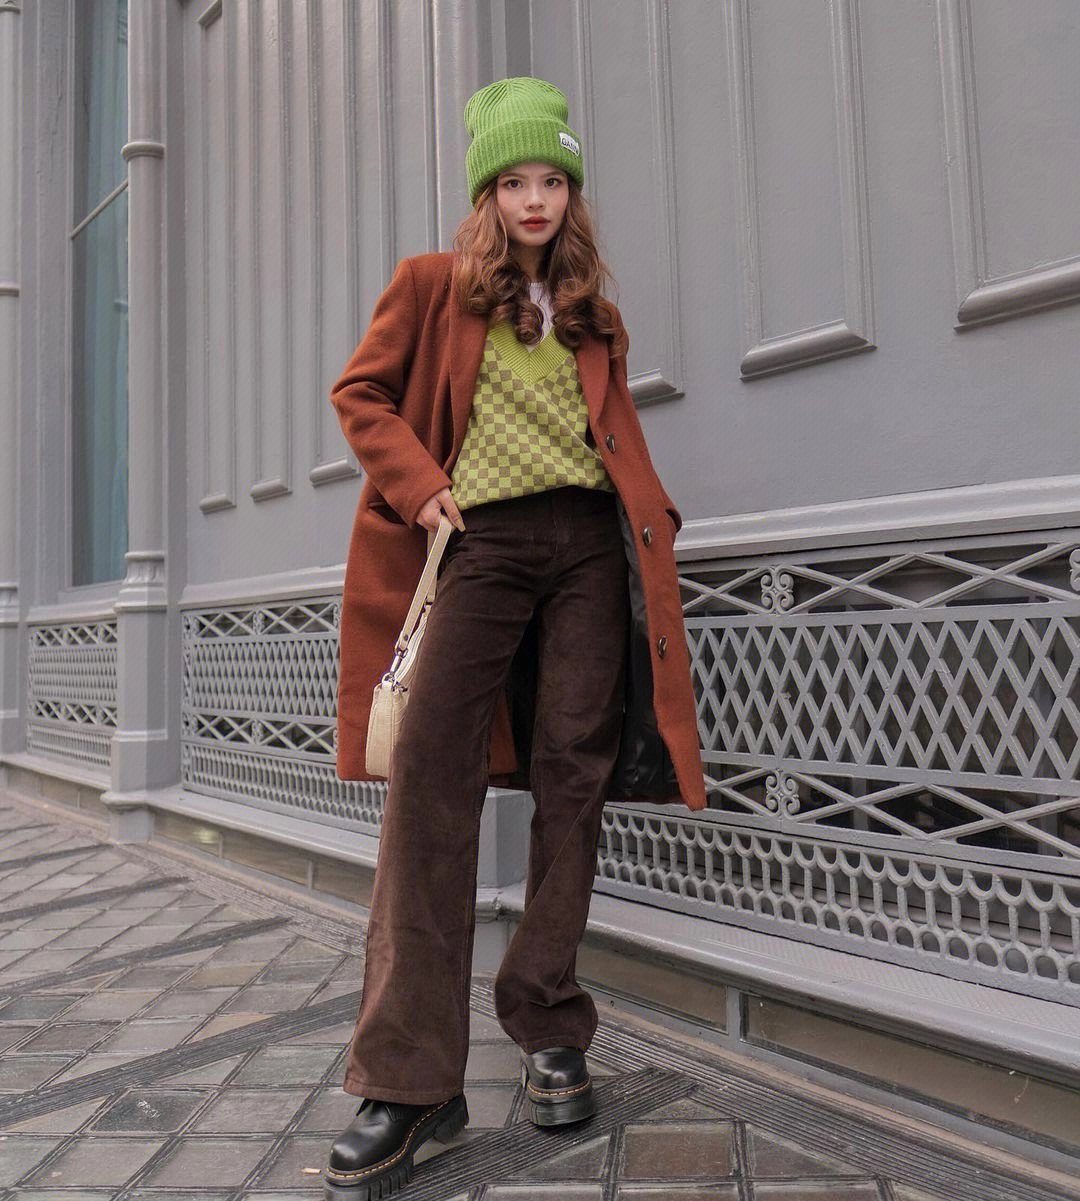 焦糖色外套,来搭配深棕色阔腿裤和厚底马丁靴绿色的内搭帽子让人眼前